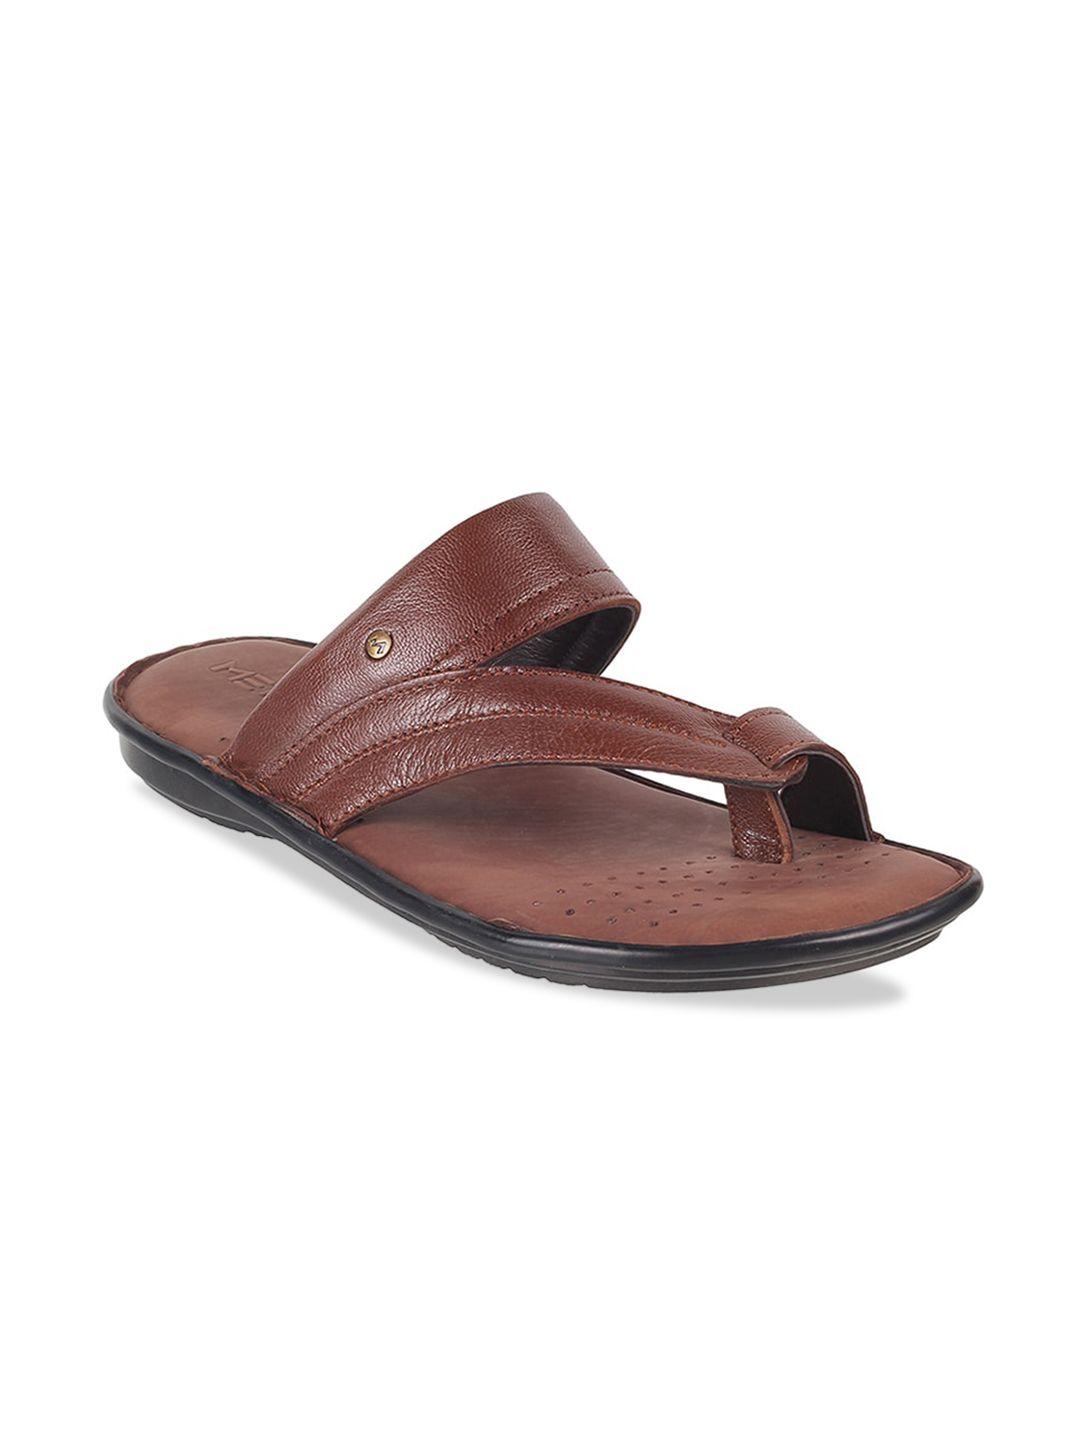 metro-men-textured-leather-comfort-sandals